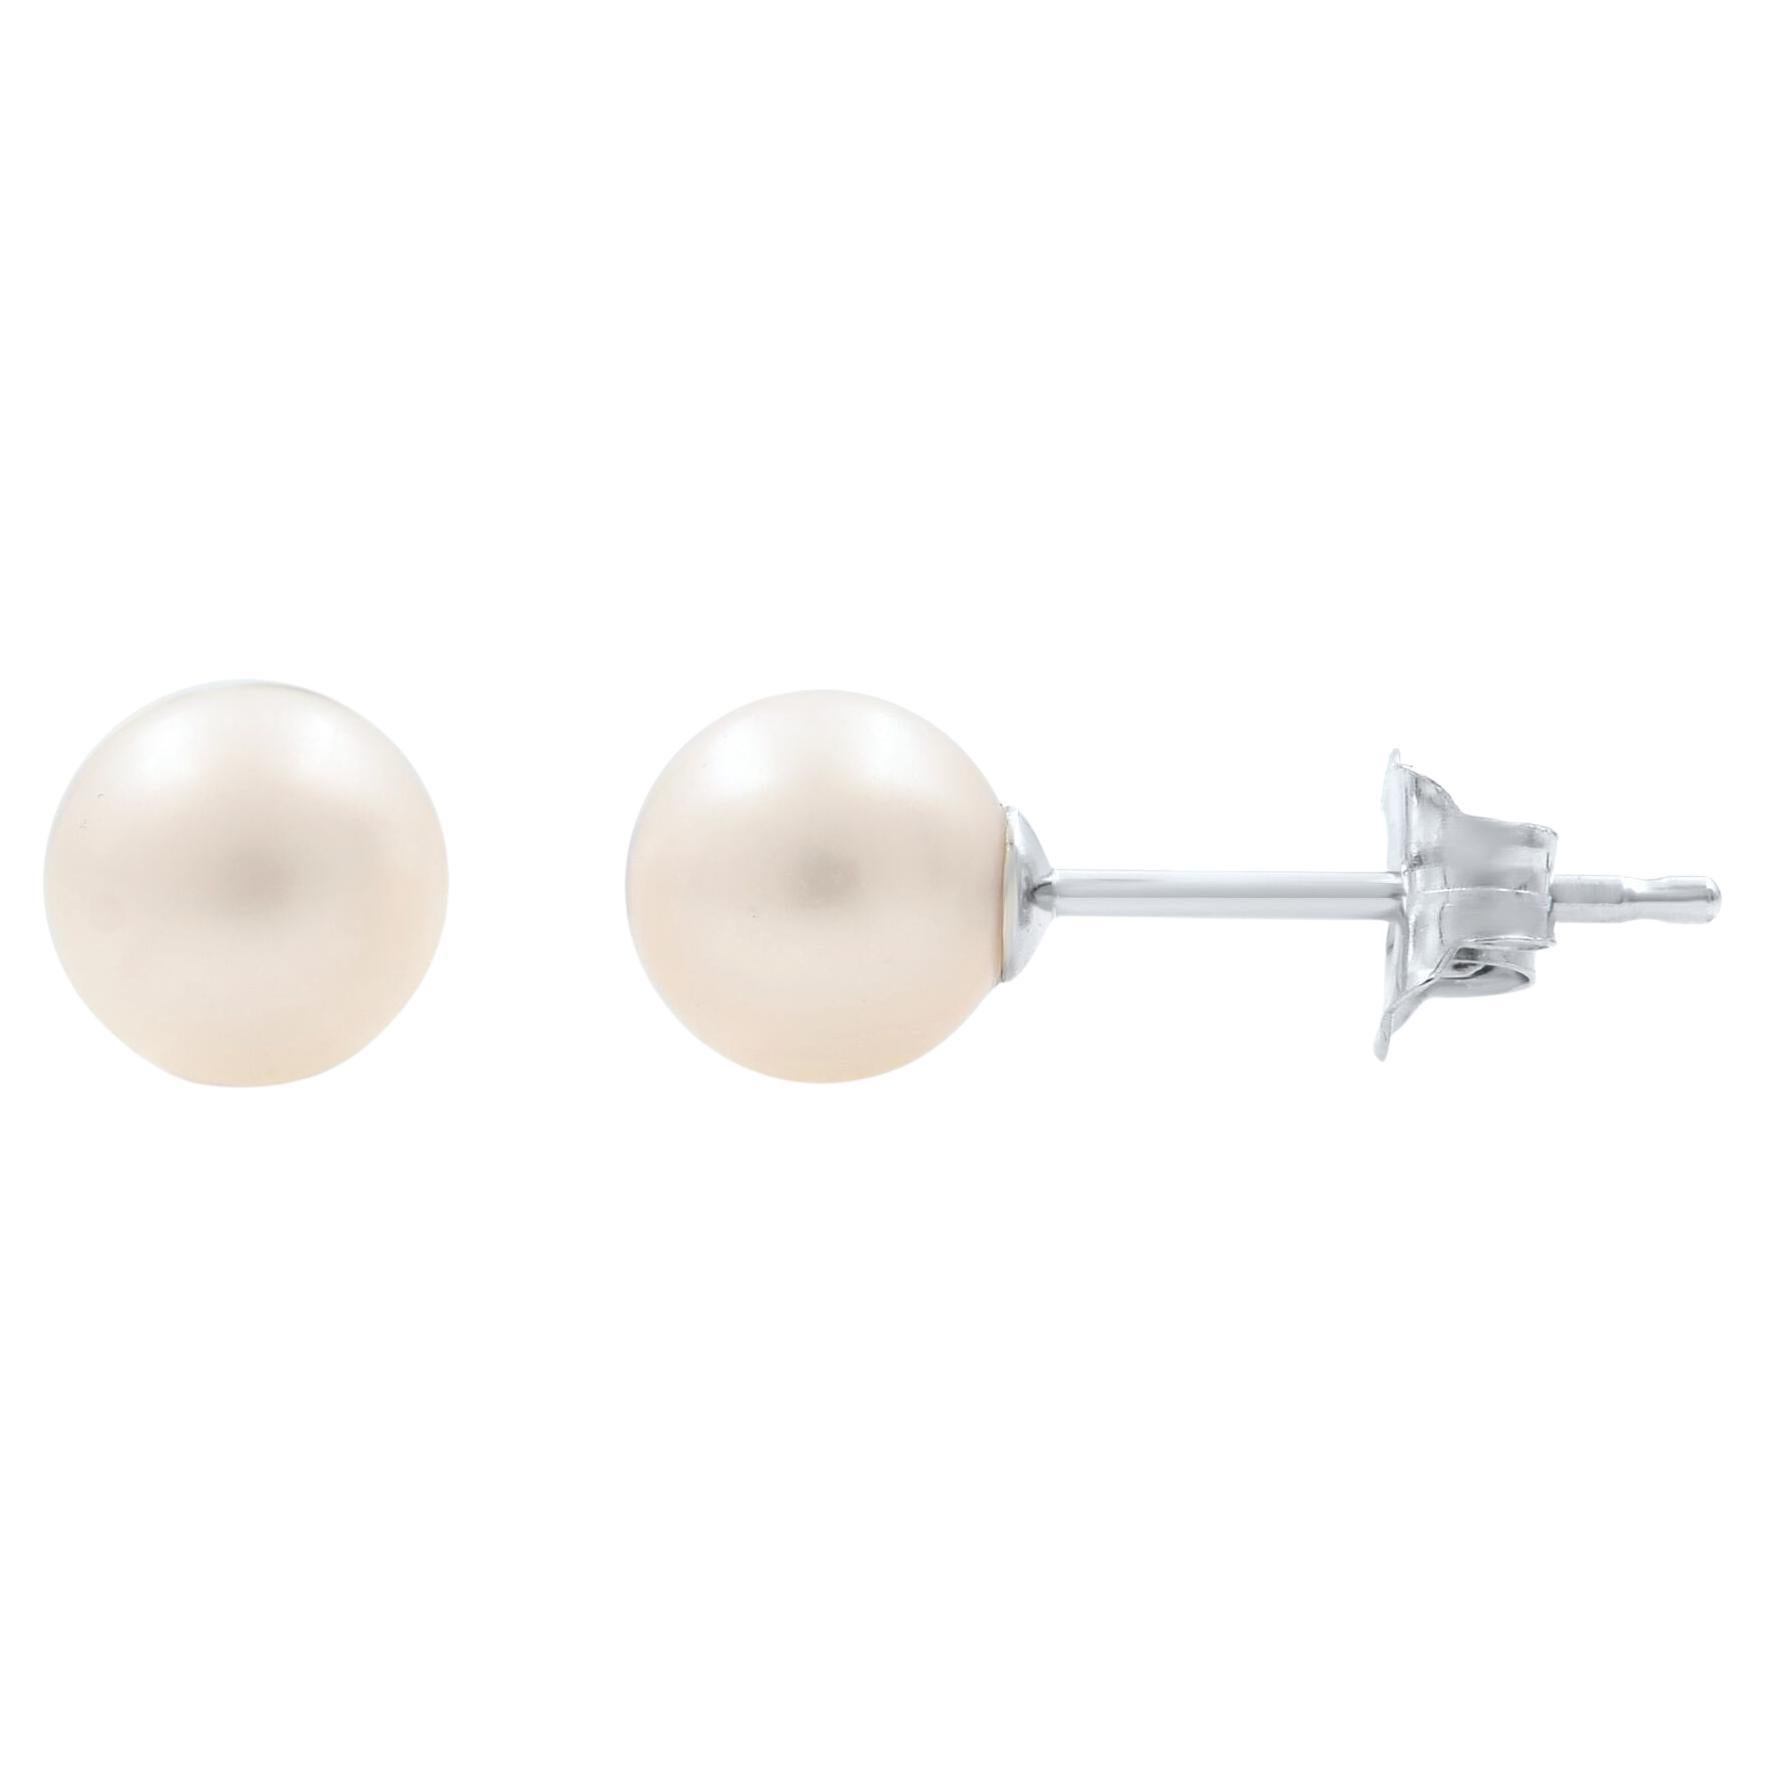 Rachel Koen Small White Natural Pearl Stud Earrings 14K White Gold For Sale